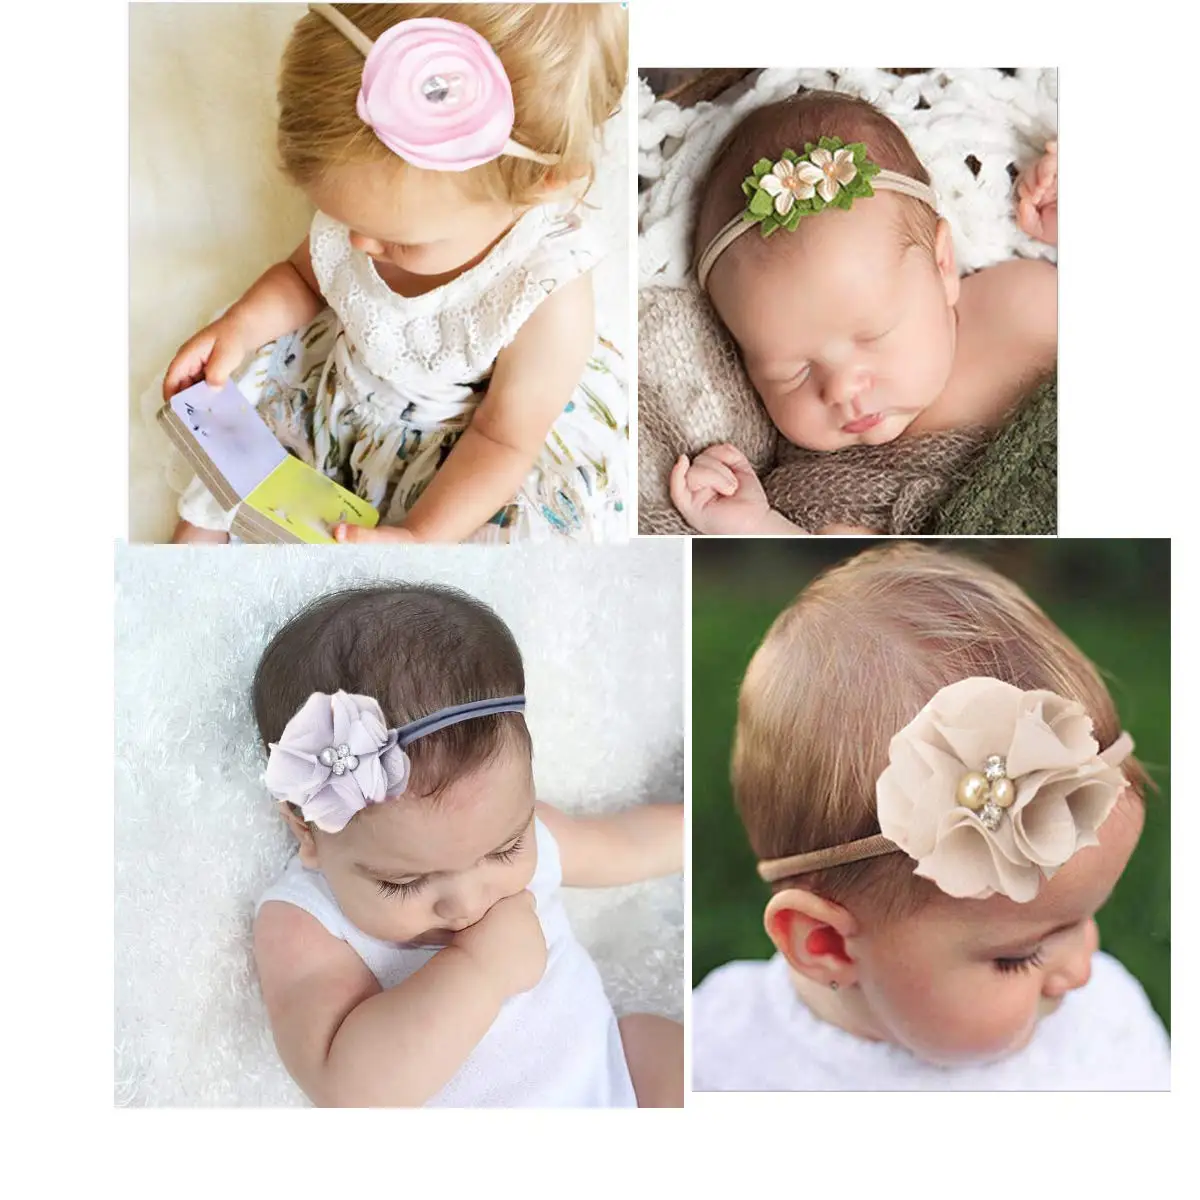 Nishine 3 шт./лот Детские нейлоновые повязки на голову бутик нейлоновые ободки для волос с бантиками с ручной вышивкой бисером цветок для новорожденных младенцев